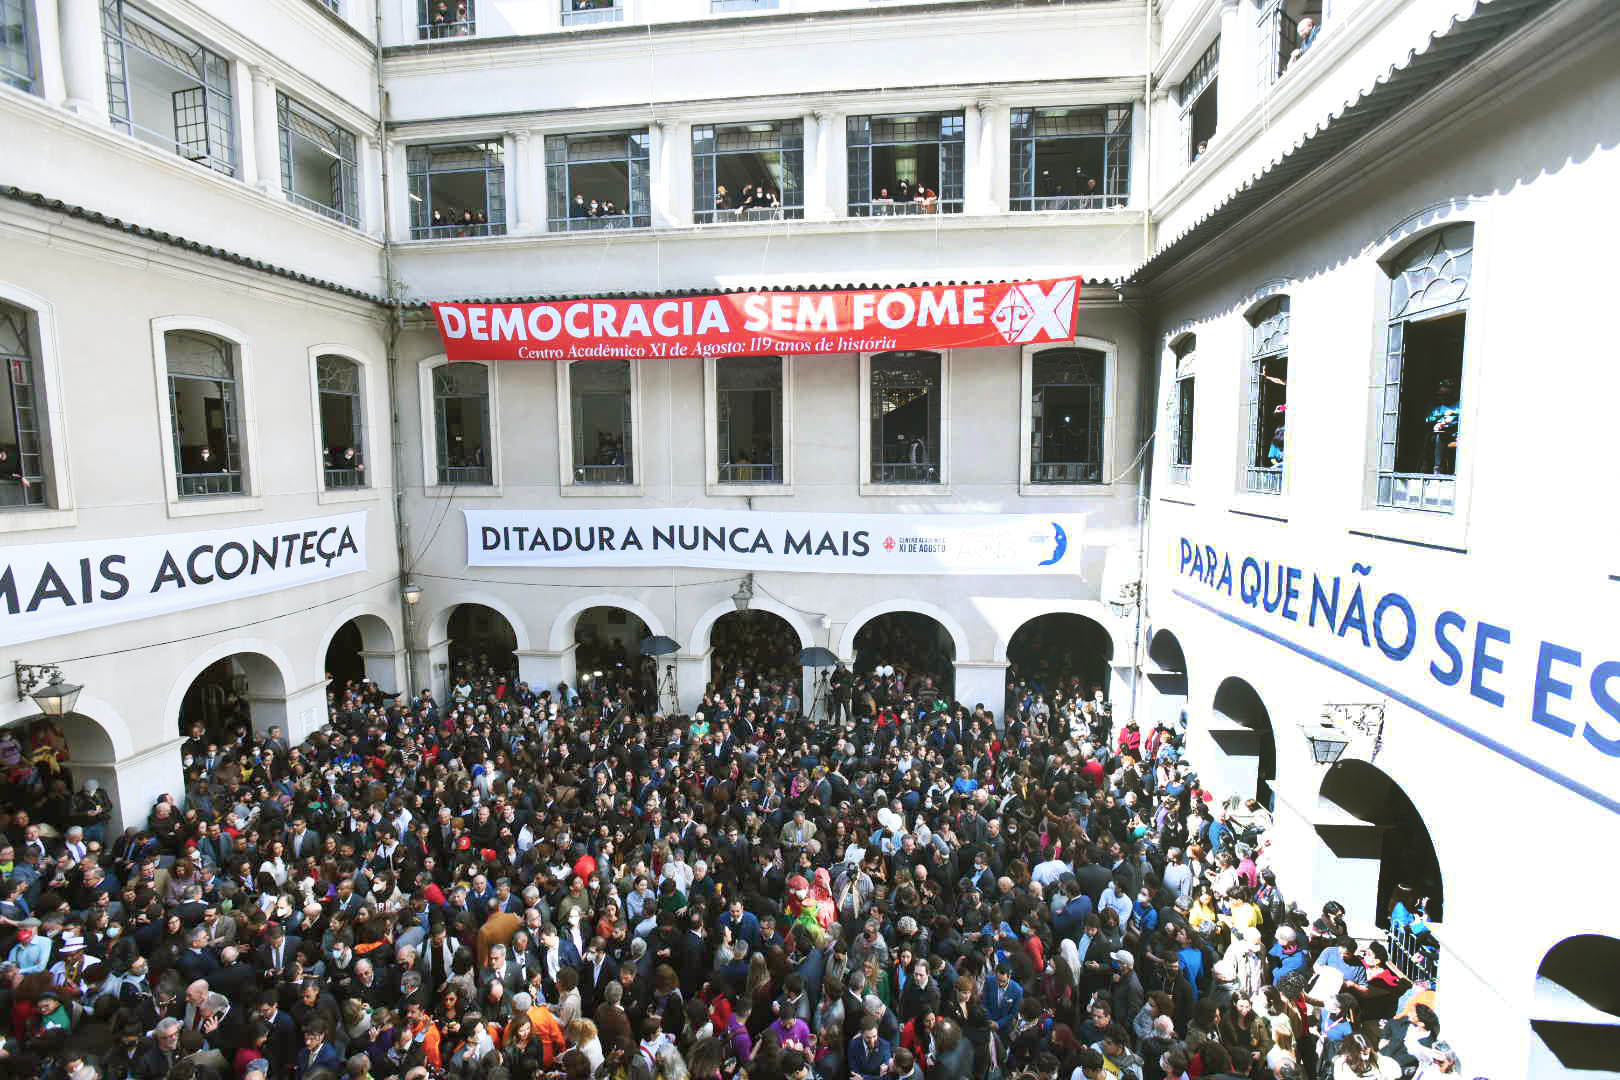 Faculdade de Direito da UFMG promove ato em favor da democracia